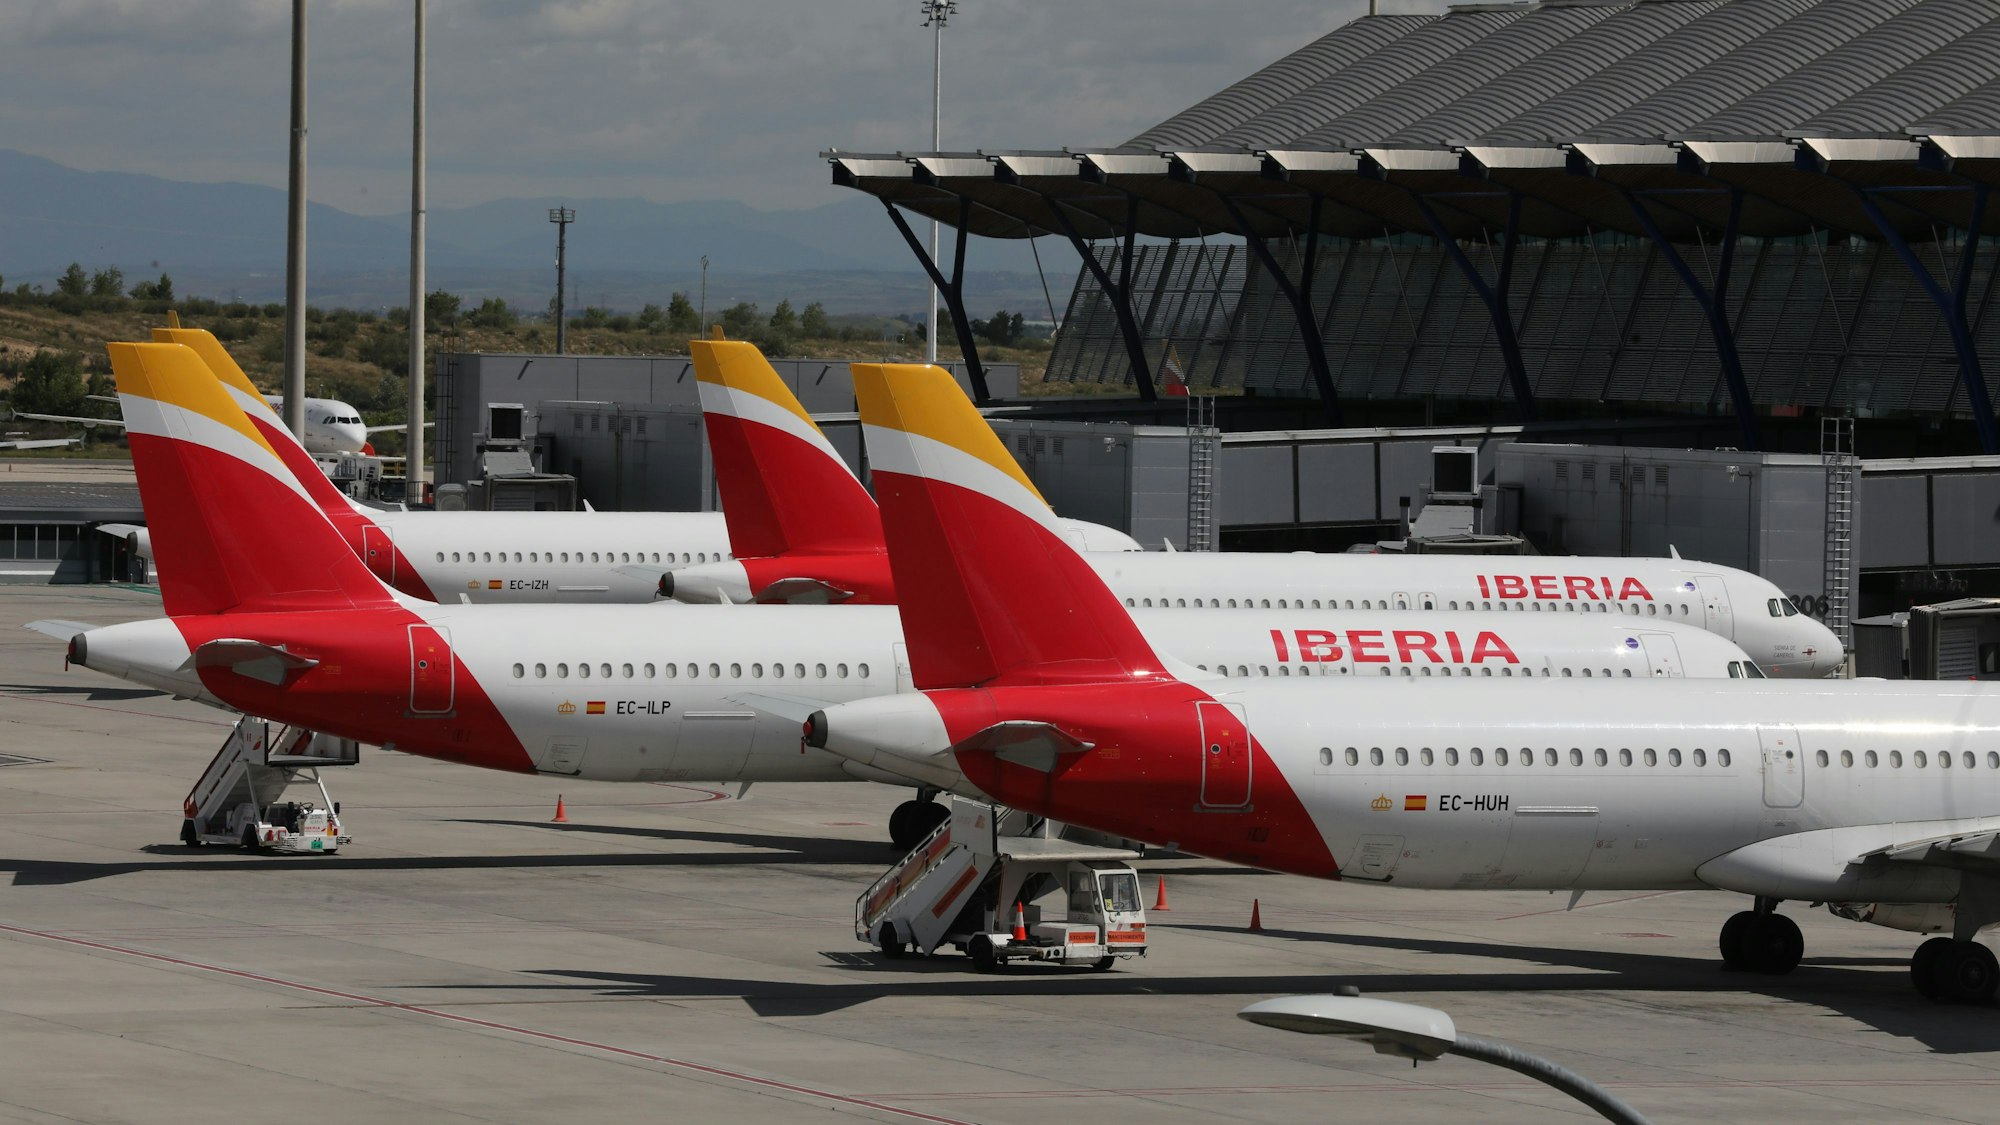 Mehrere Maschinen der spanischen Fluggesellschaft Iberia sind auf dem Flughafen Madrid geparkt.